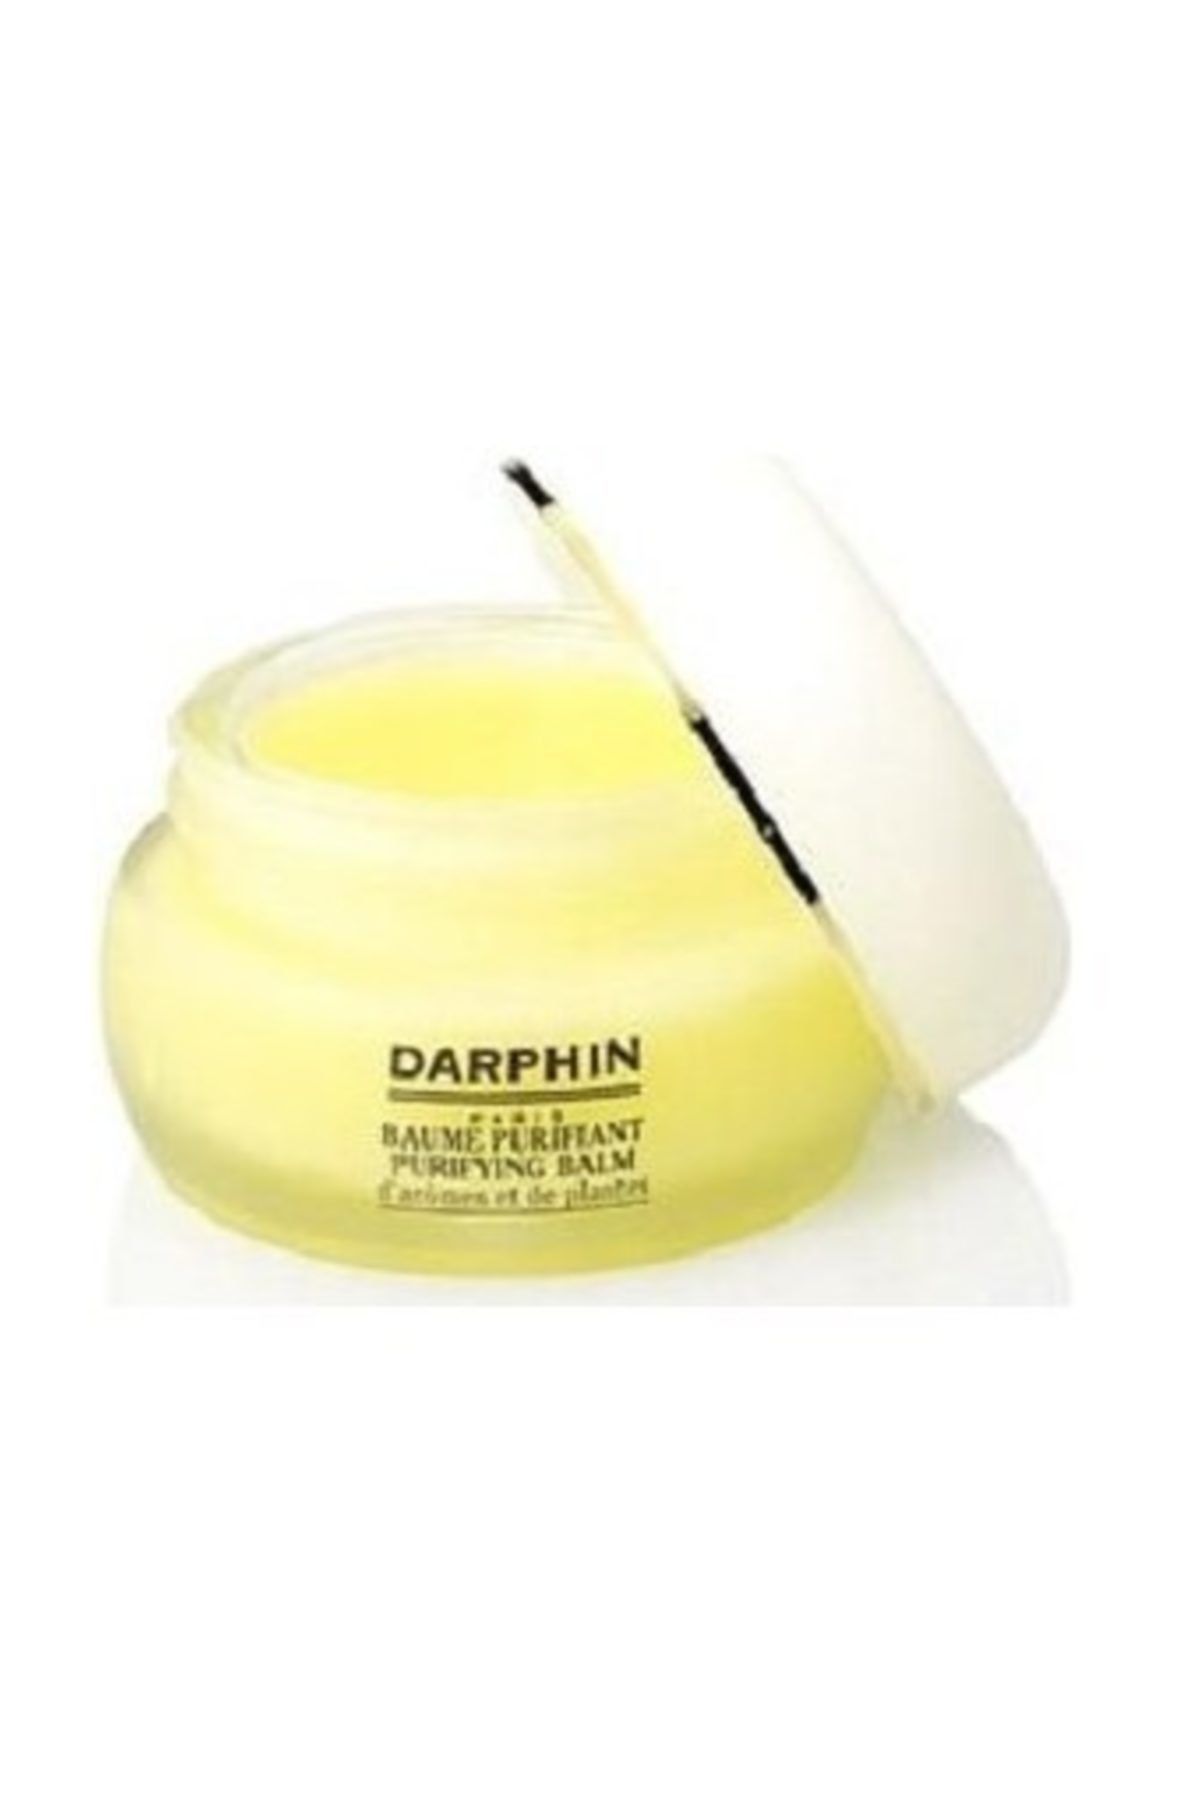 Darphin Purifying Balm - Aromatik Bakım Balmı 15 ml